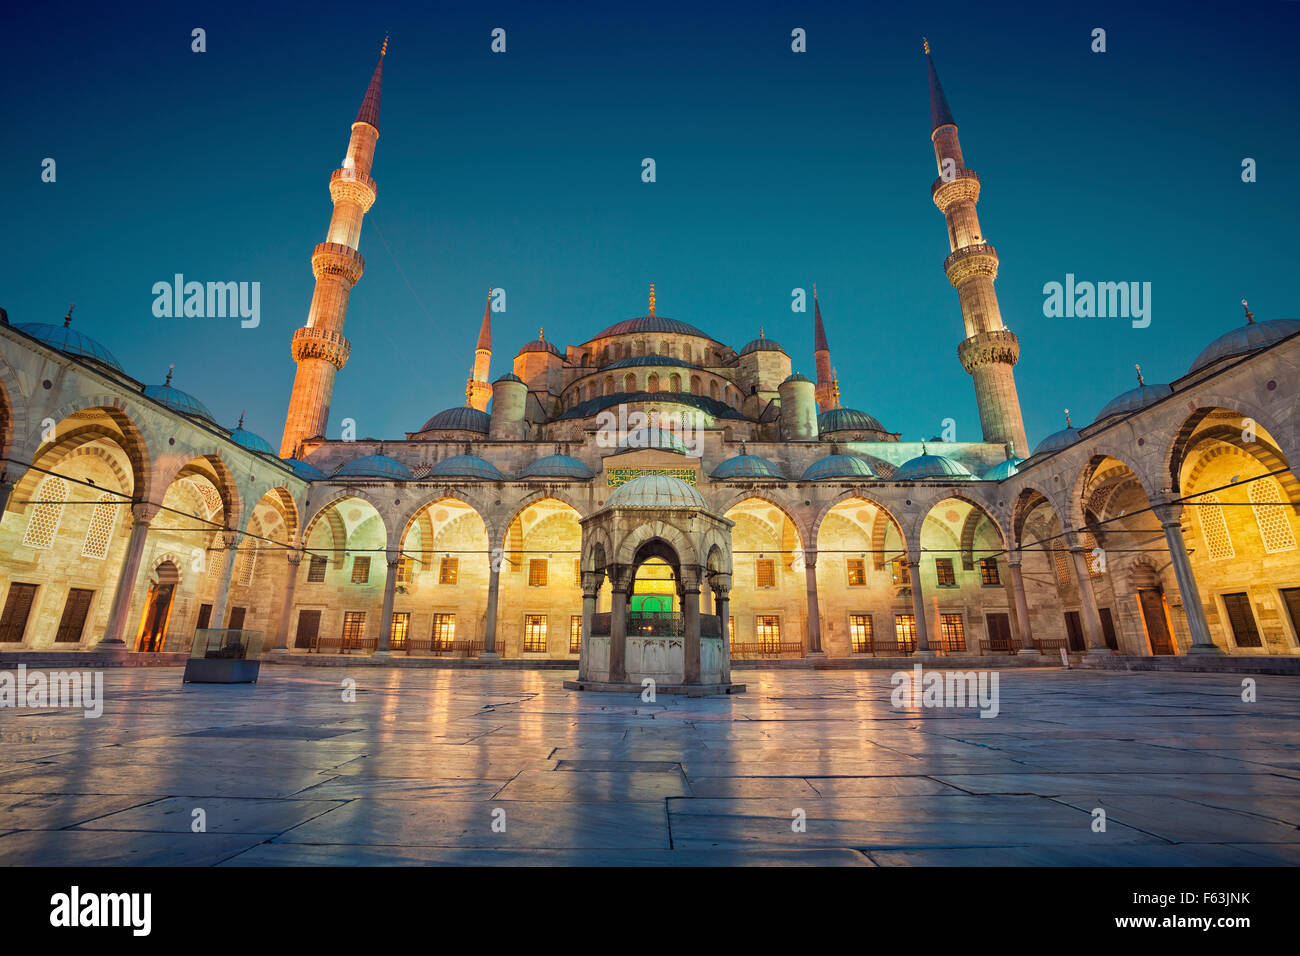 Mosquée bleue. Image de la Mosquée Bleue à Istanbul, Turquie pendant le crépuscule heure bleue. Banque D'Images